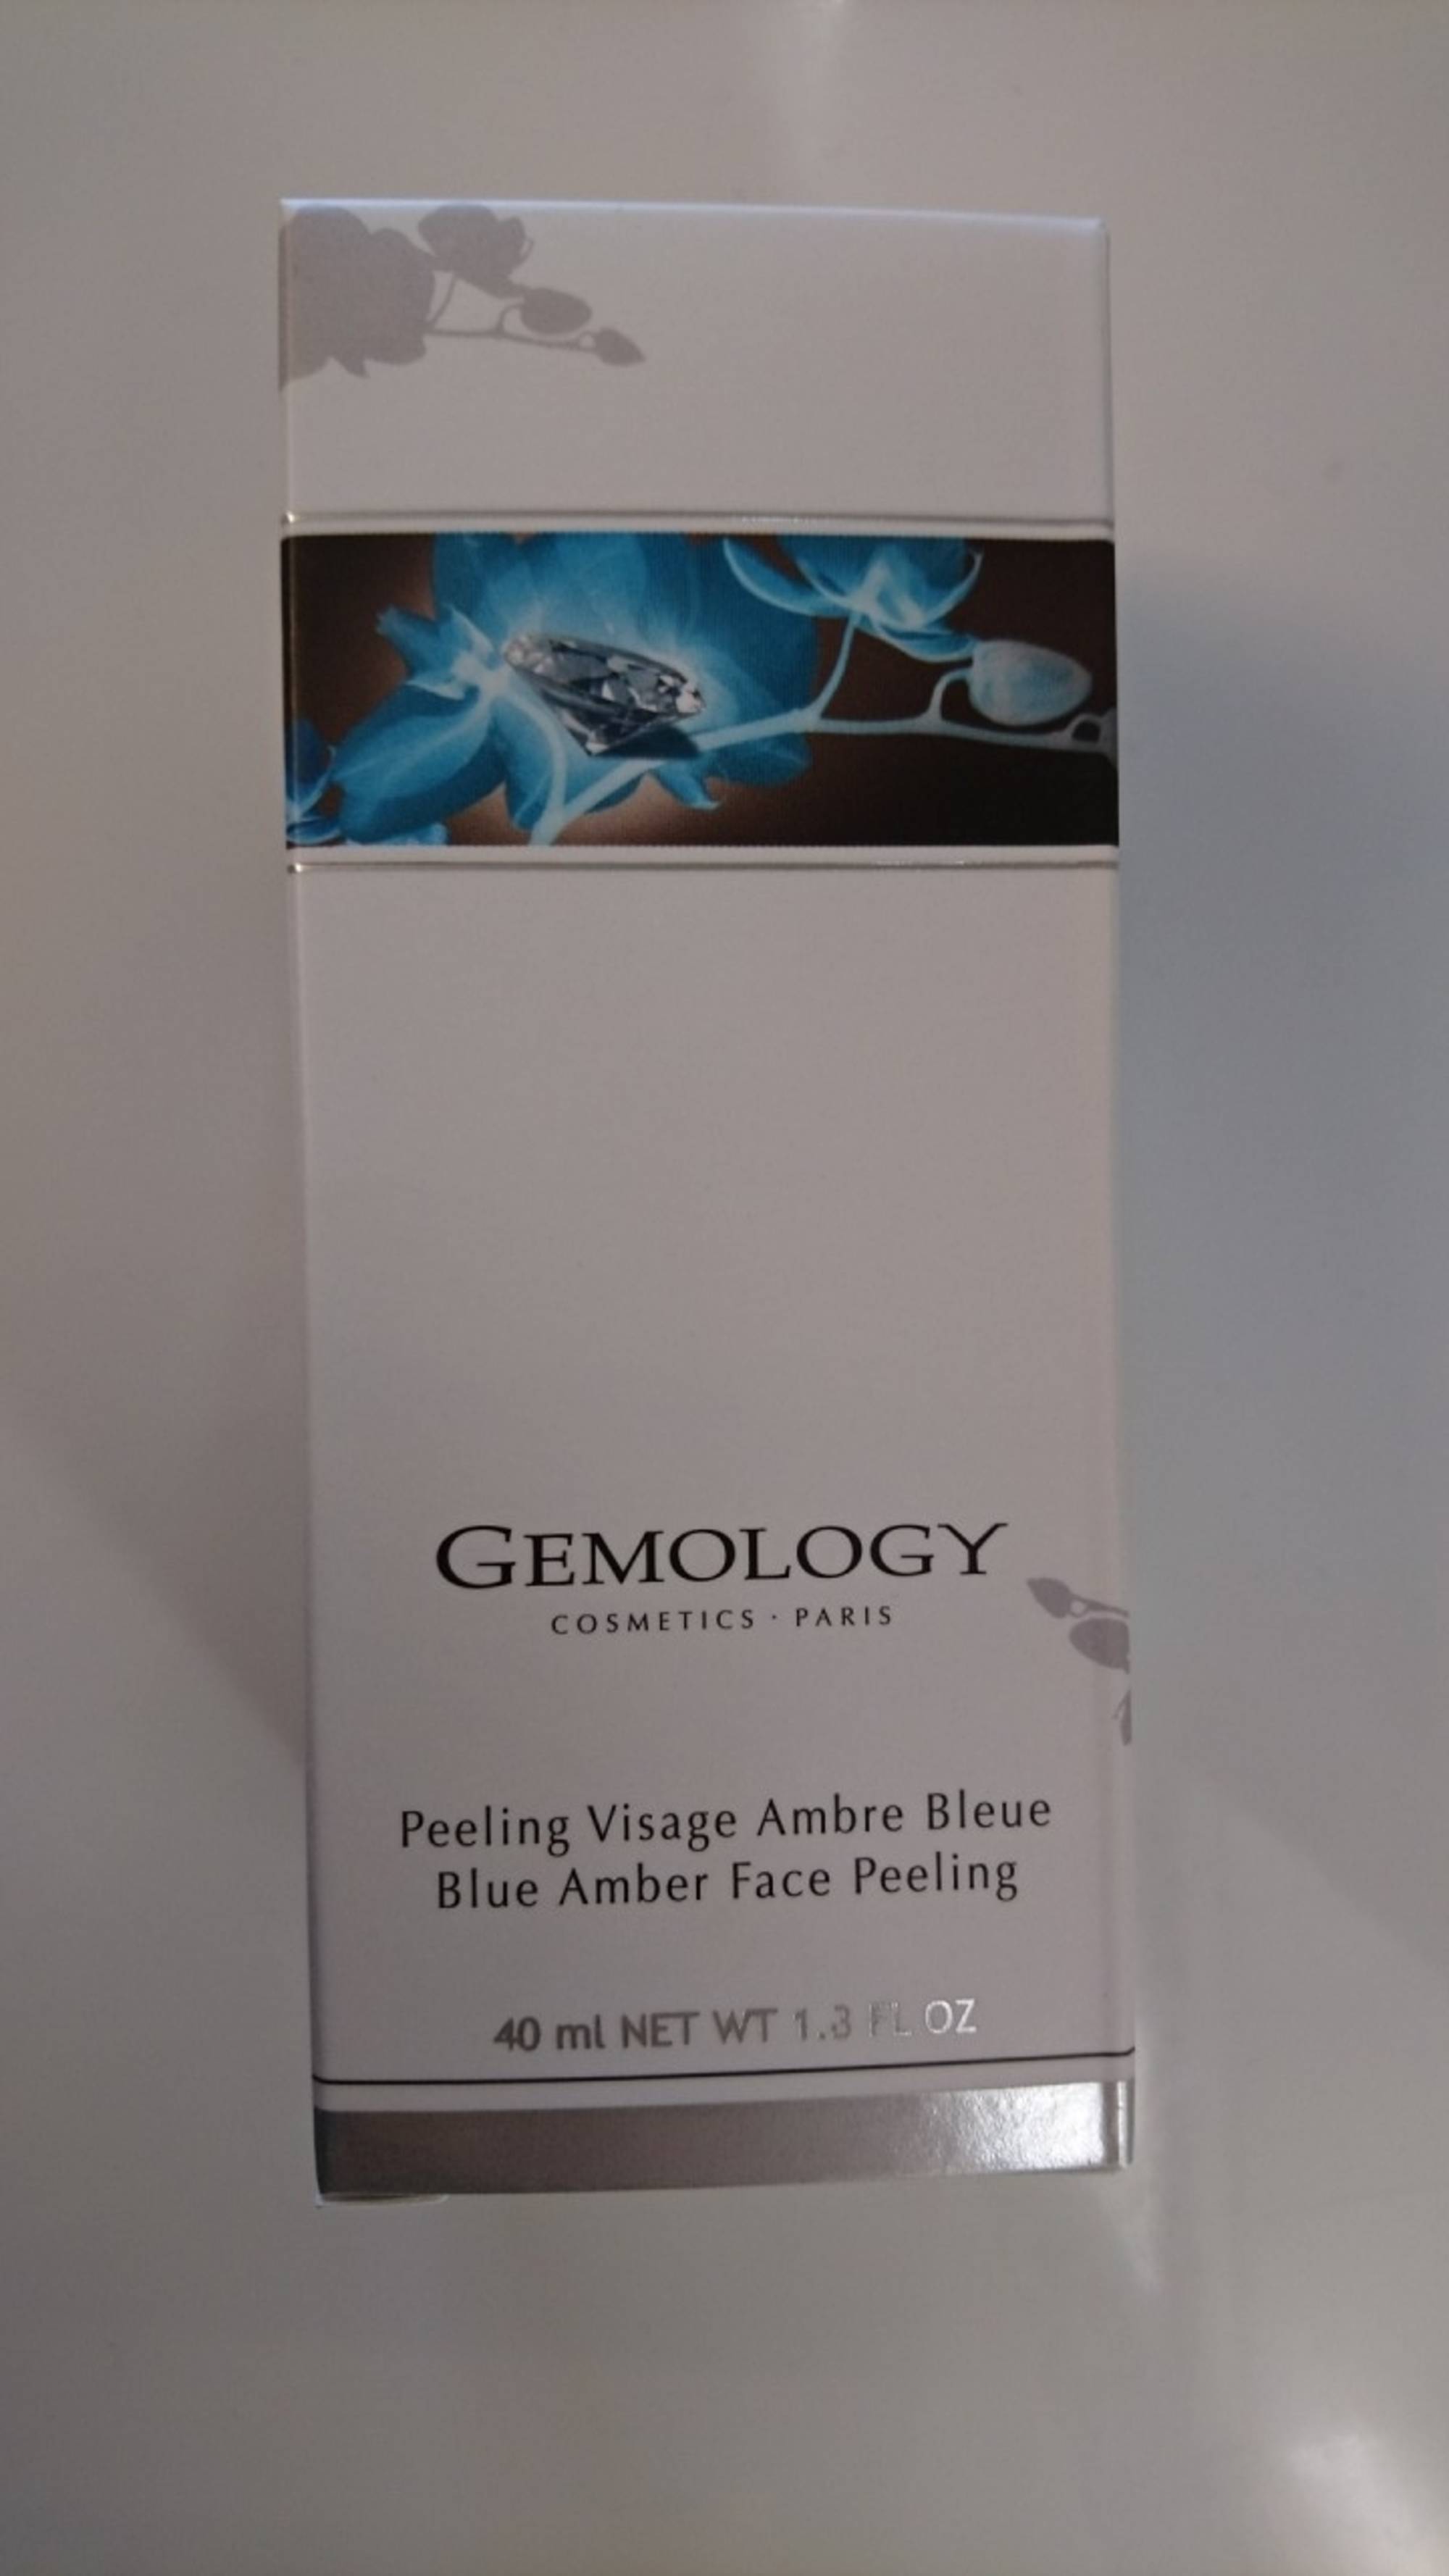 GEMOLOGY - Peeling visage ambre bleue